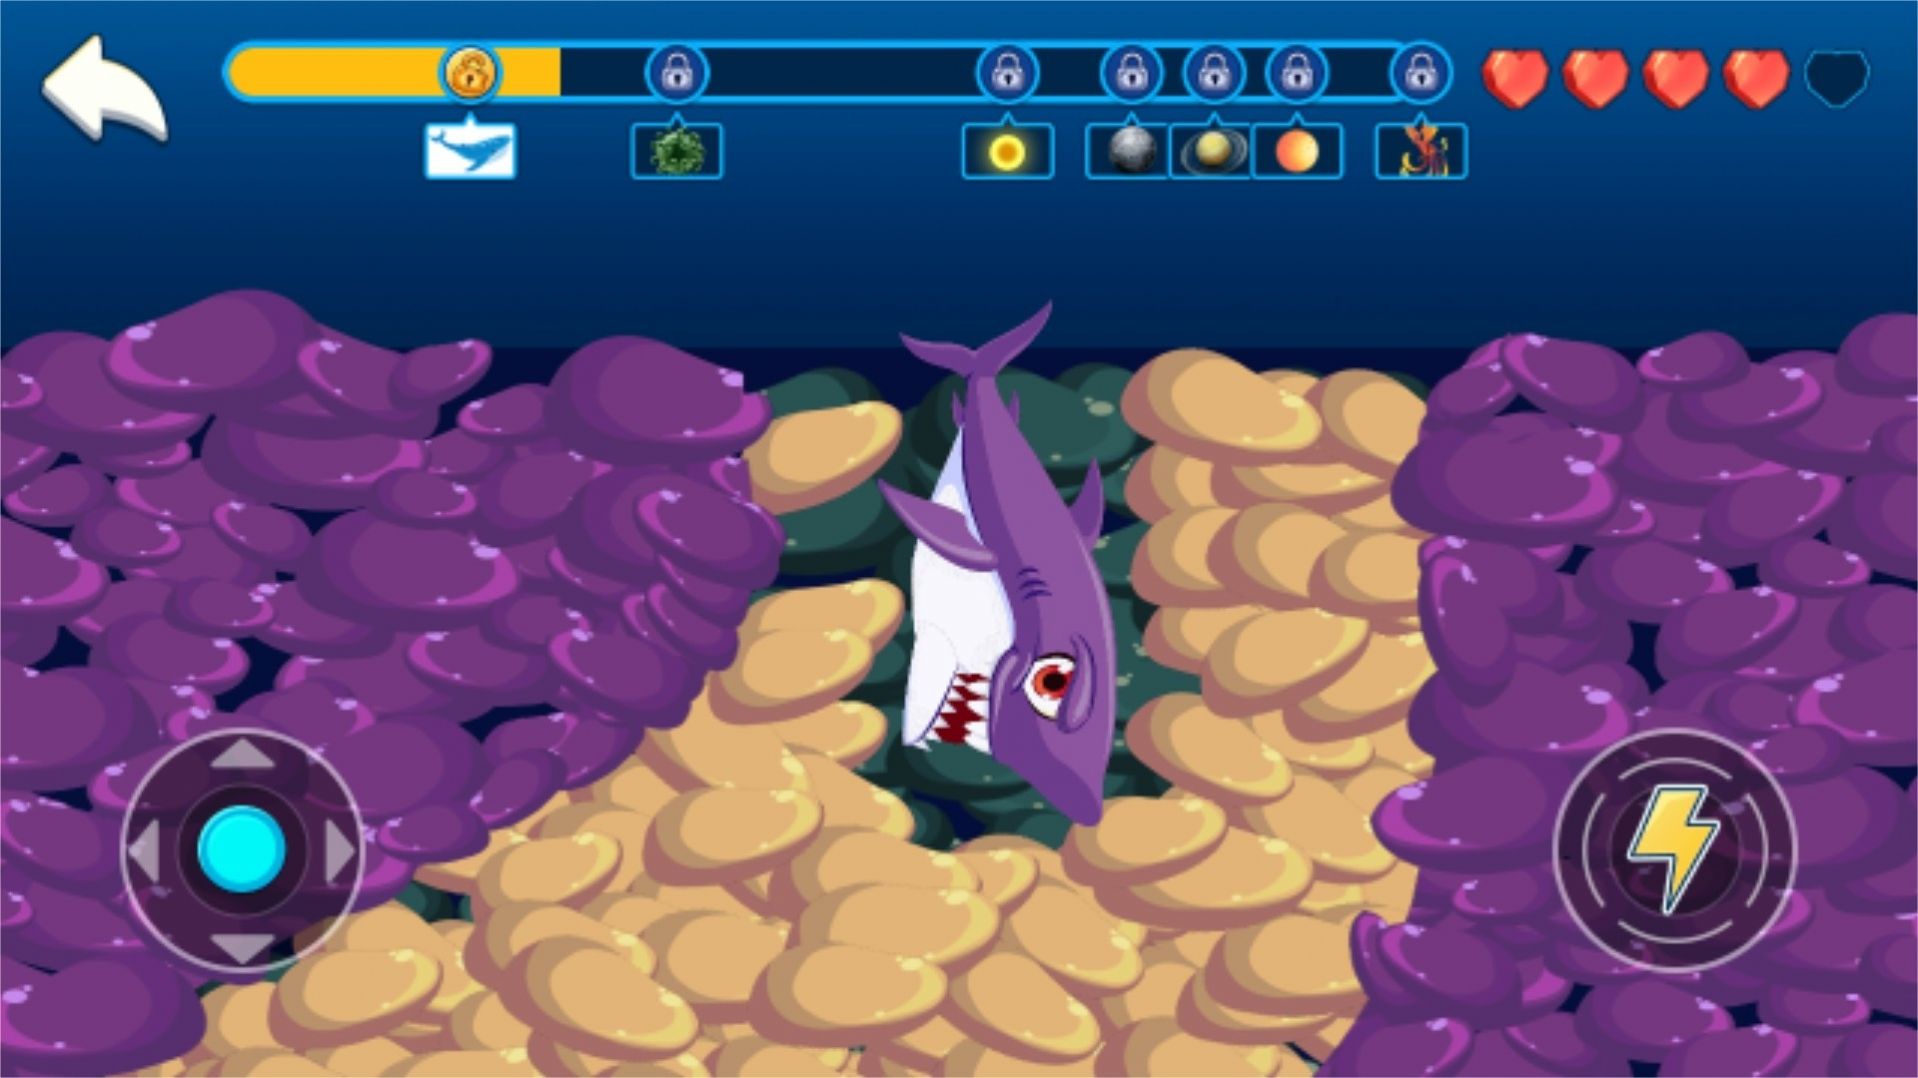 吞星鲨大冒险游戏下载,吞星鲨大冒险游戏安卓版 v1.0